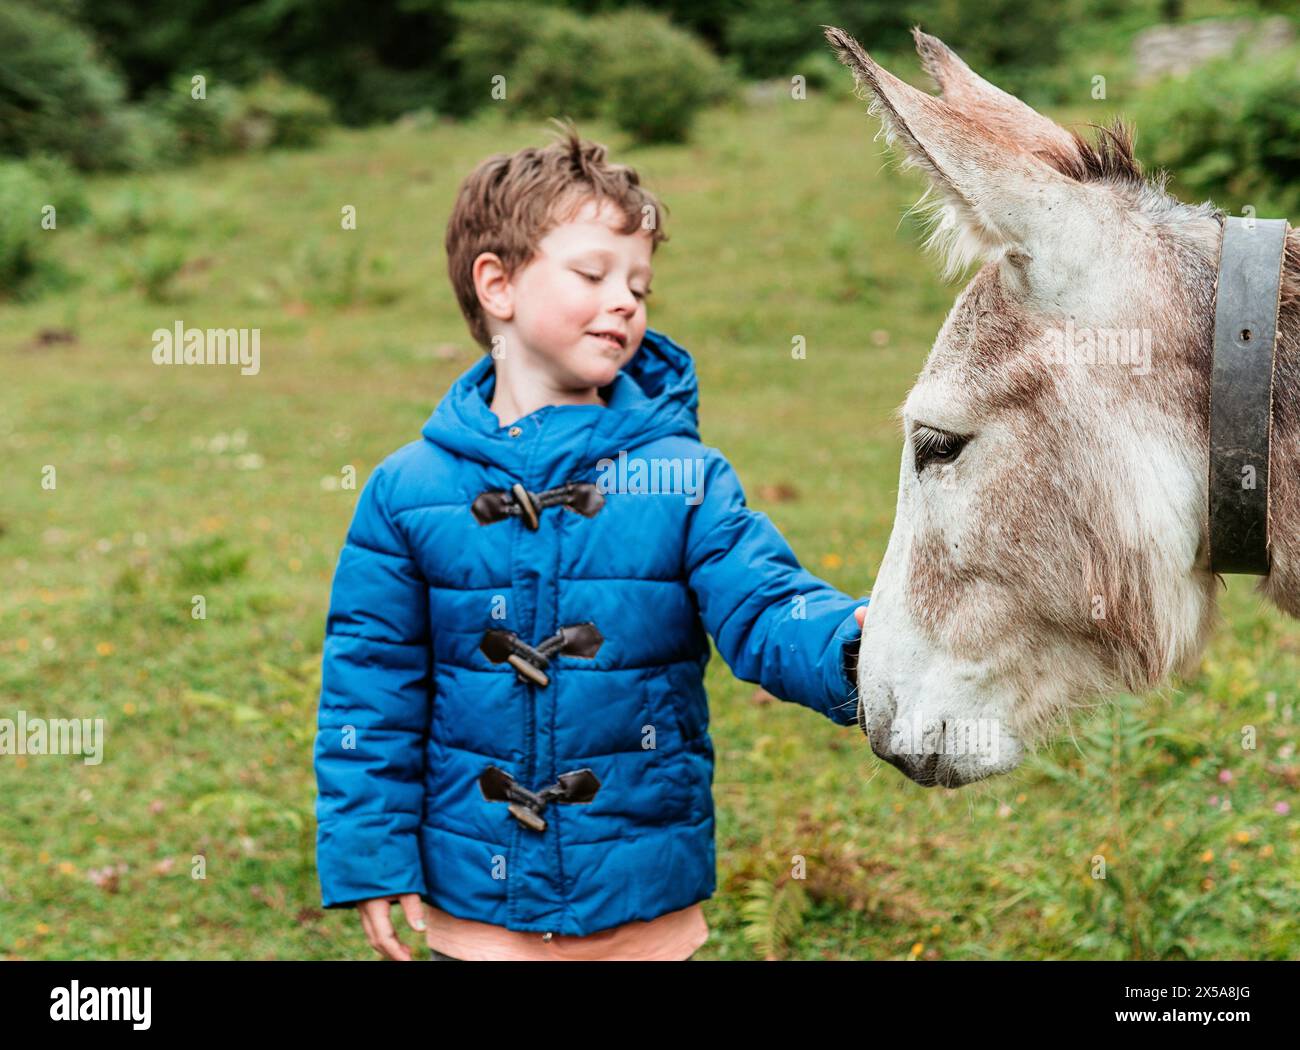 Un ragazzo allegro con una giacca blu si attacca con un dolce asino, catturando l'essenza delle attività ricreative in famiglia all'aperto. Foto Stock